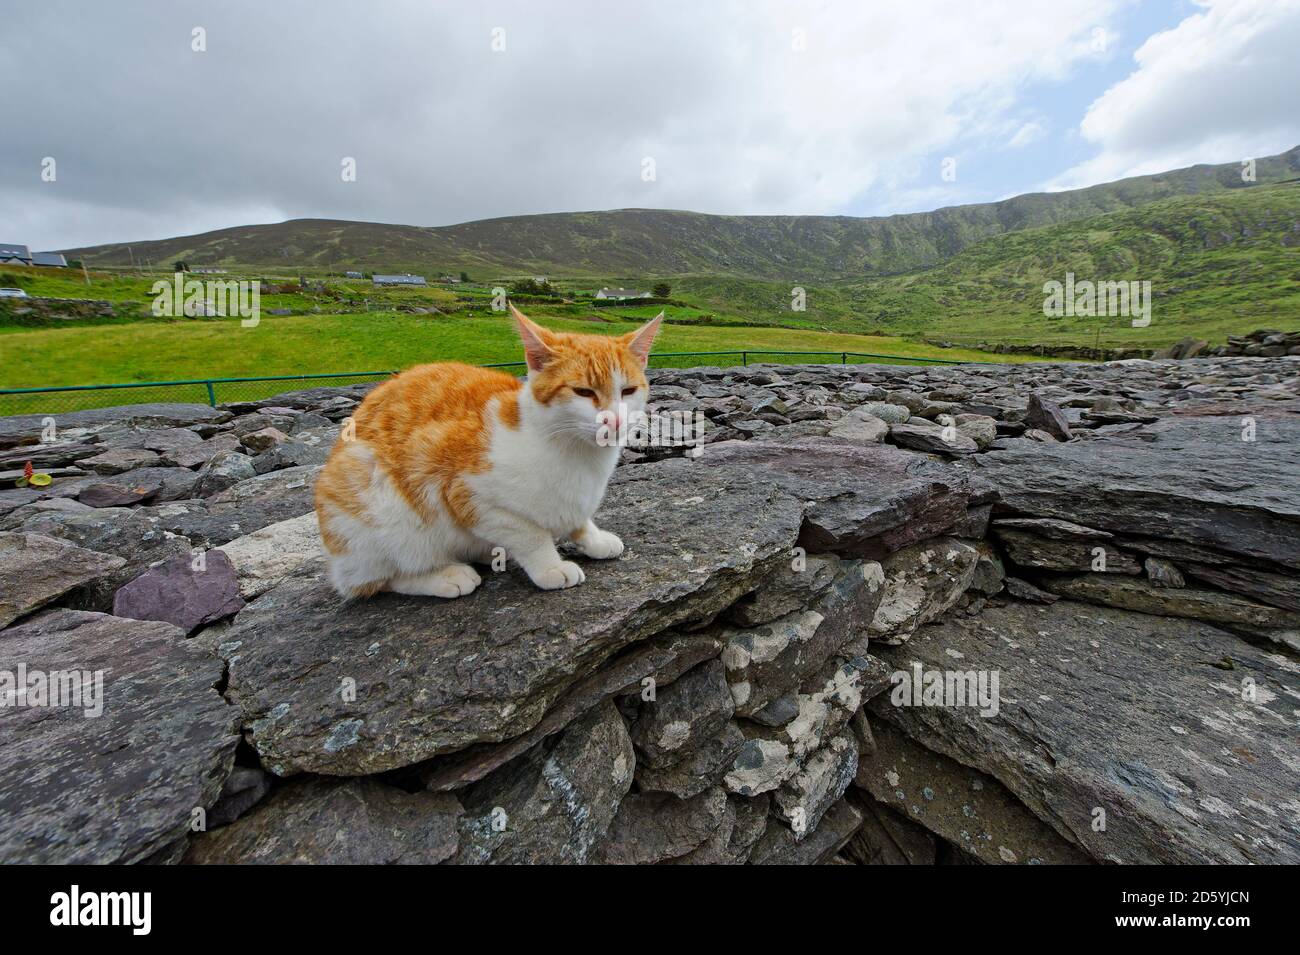 L'Irlande, le comté de Kerry, près de Waterville, Fort Lothaire, cat assis sur des pierres Banque D'Images